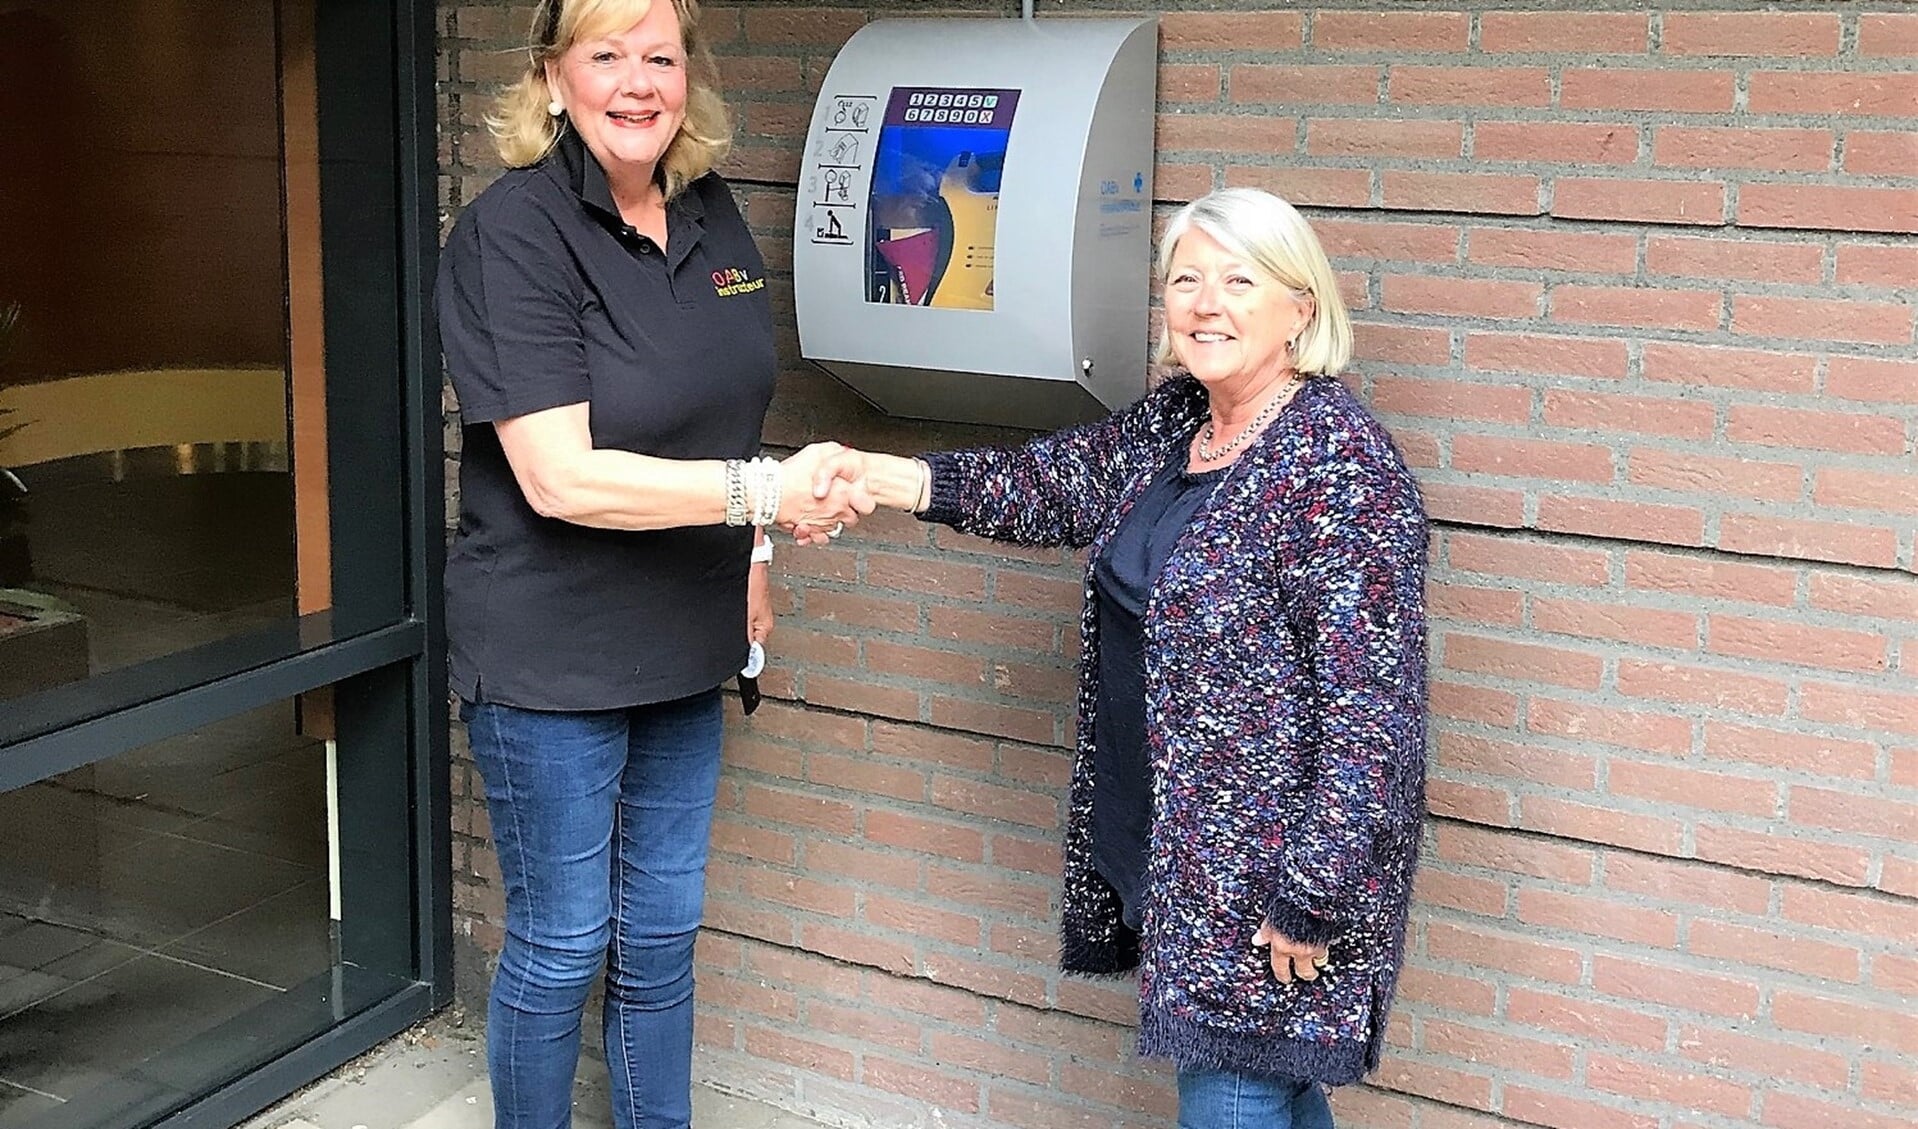 De AED werd geschonken aan de Vereniging van Eigenaren door één van de bewoners van de flat, Ingrid Jansen-Prot.